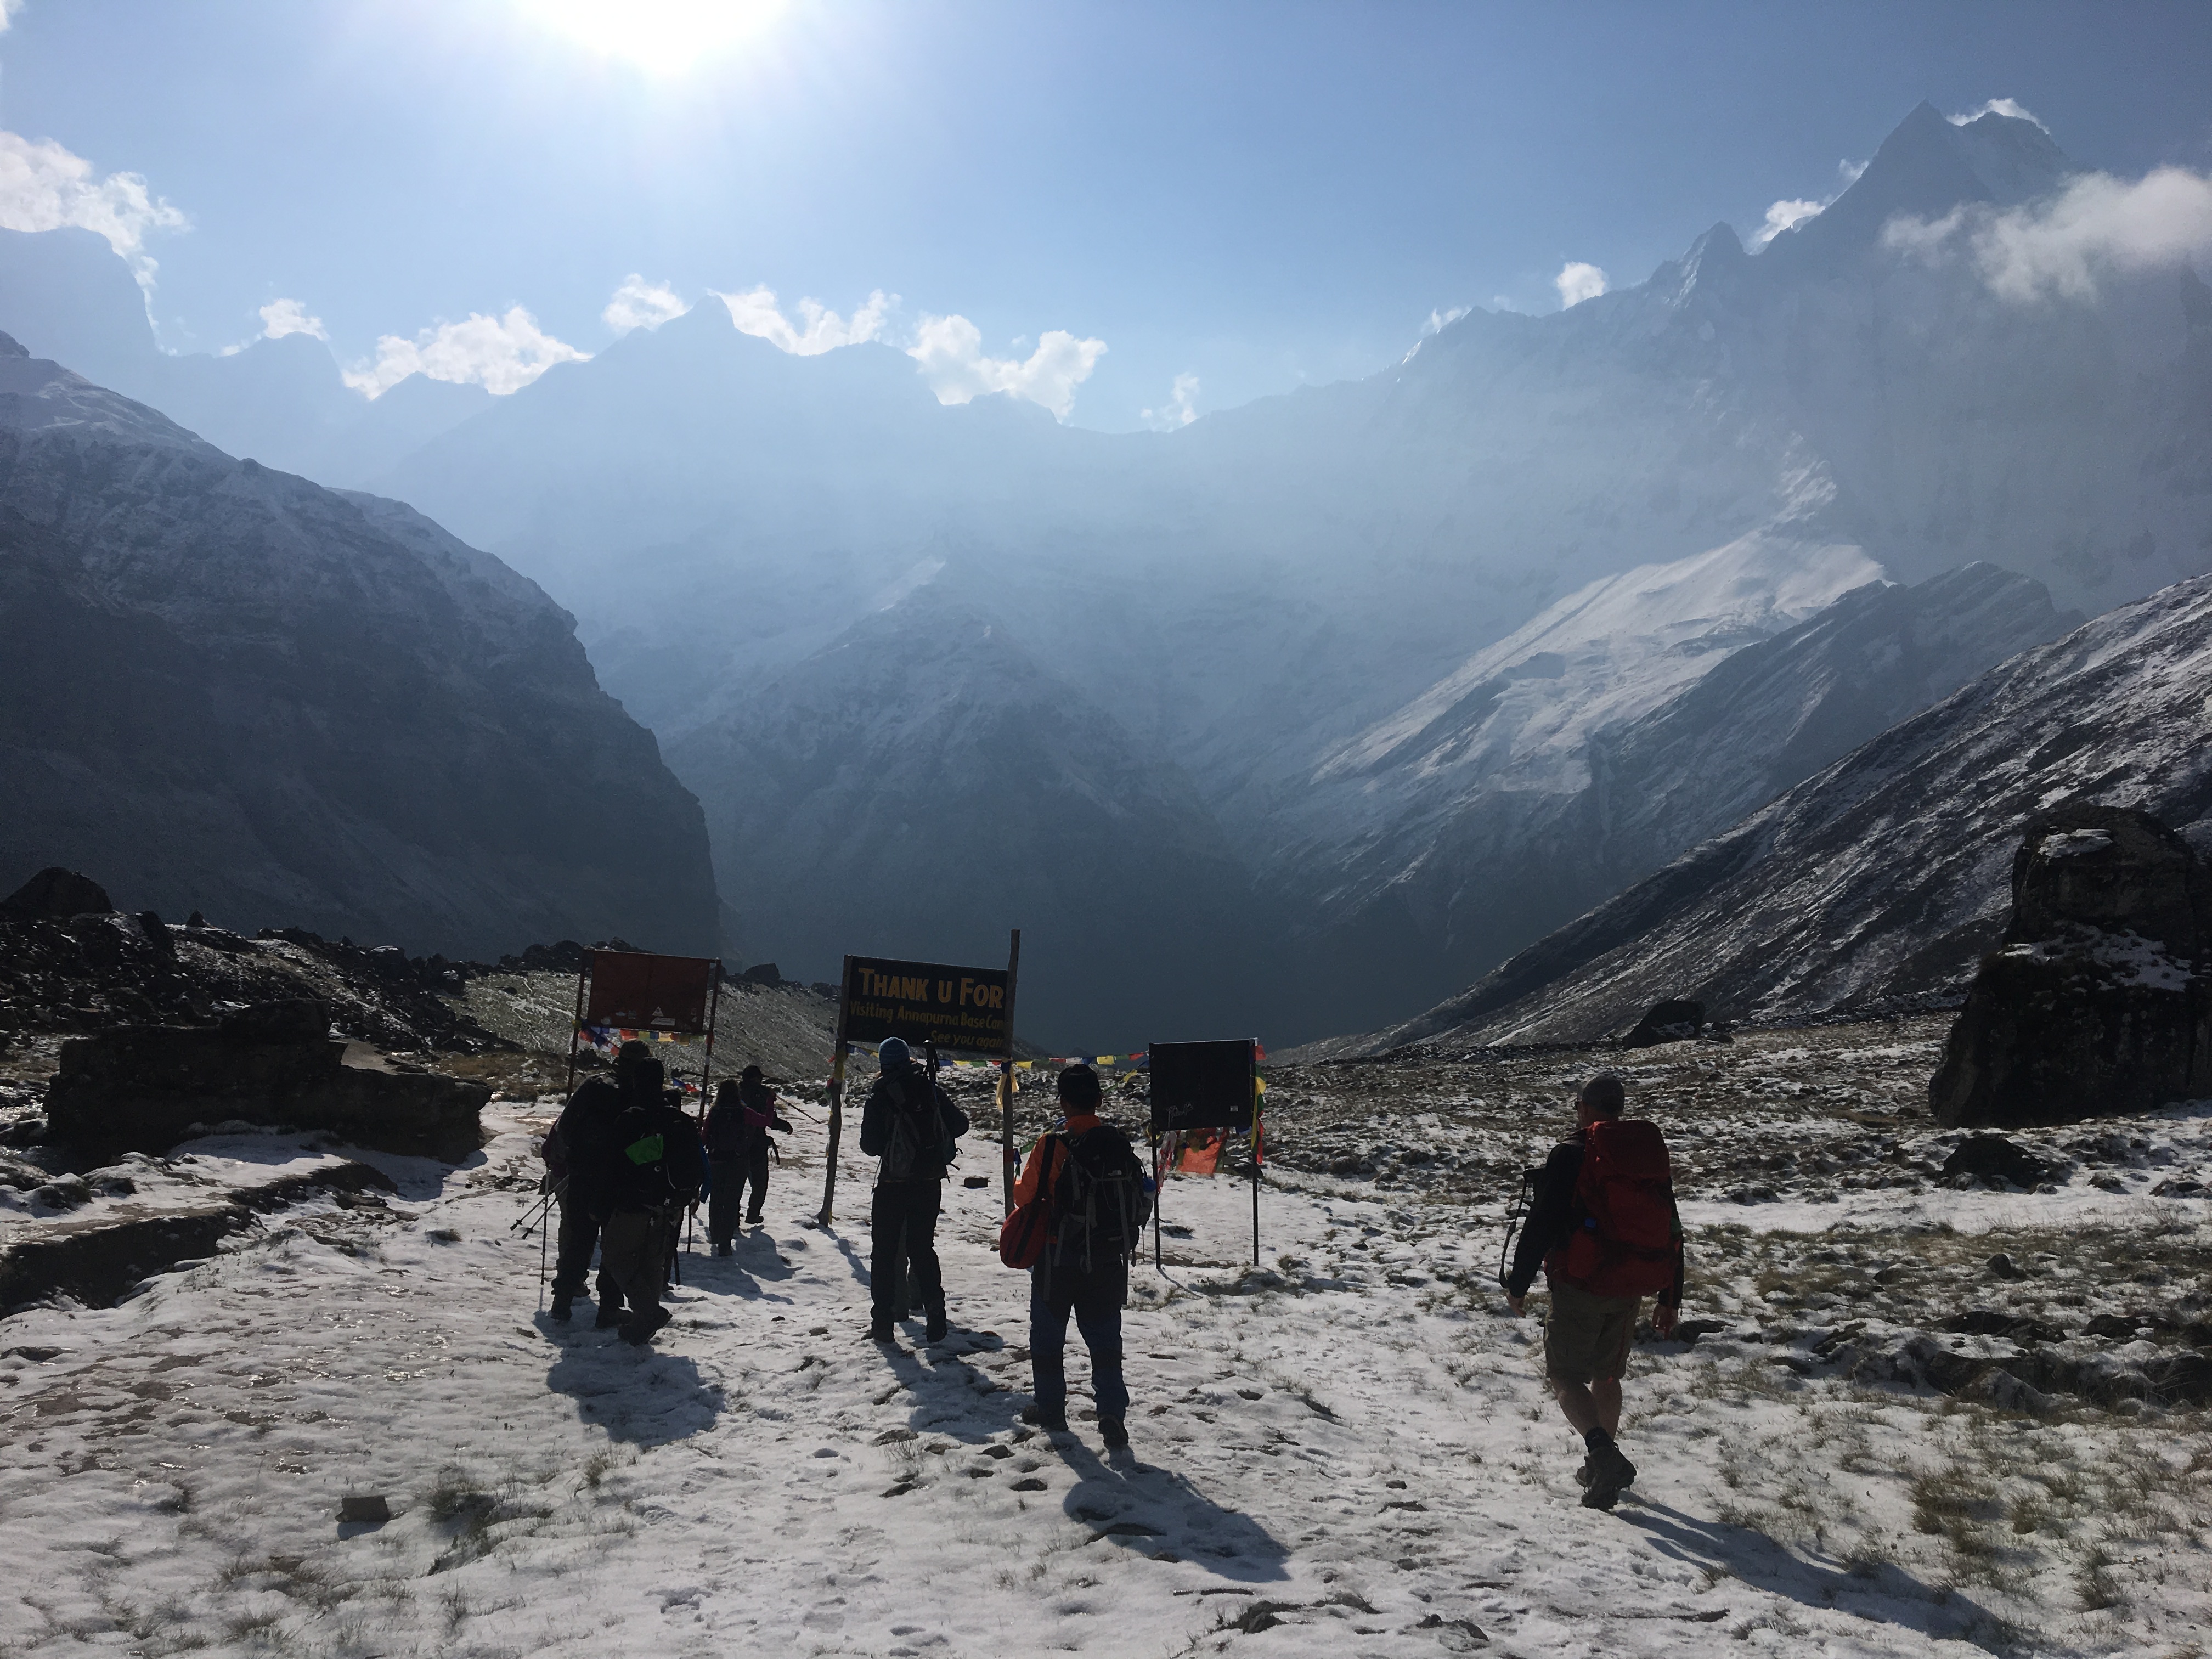 Leaving Annapurna Base Camp